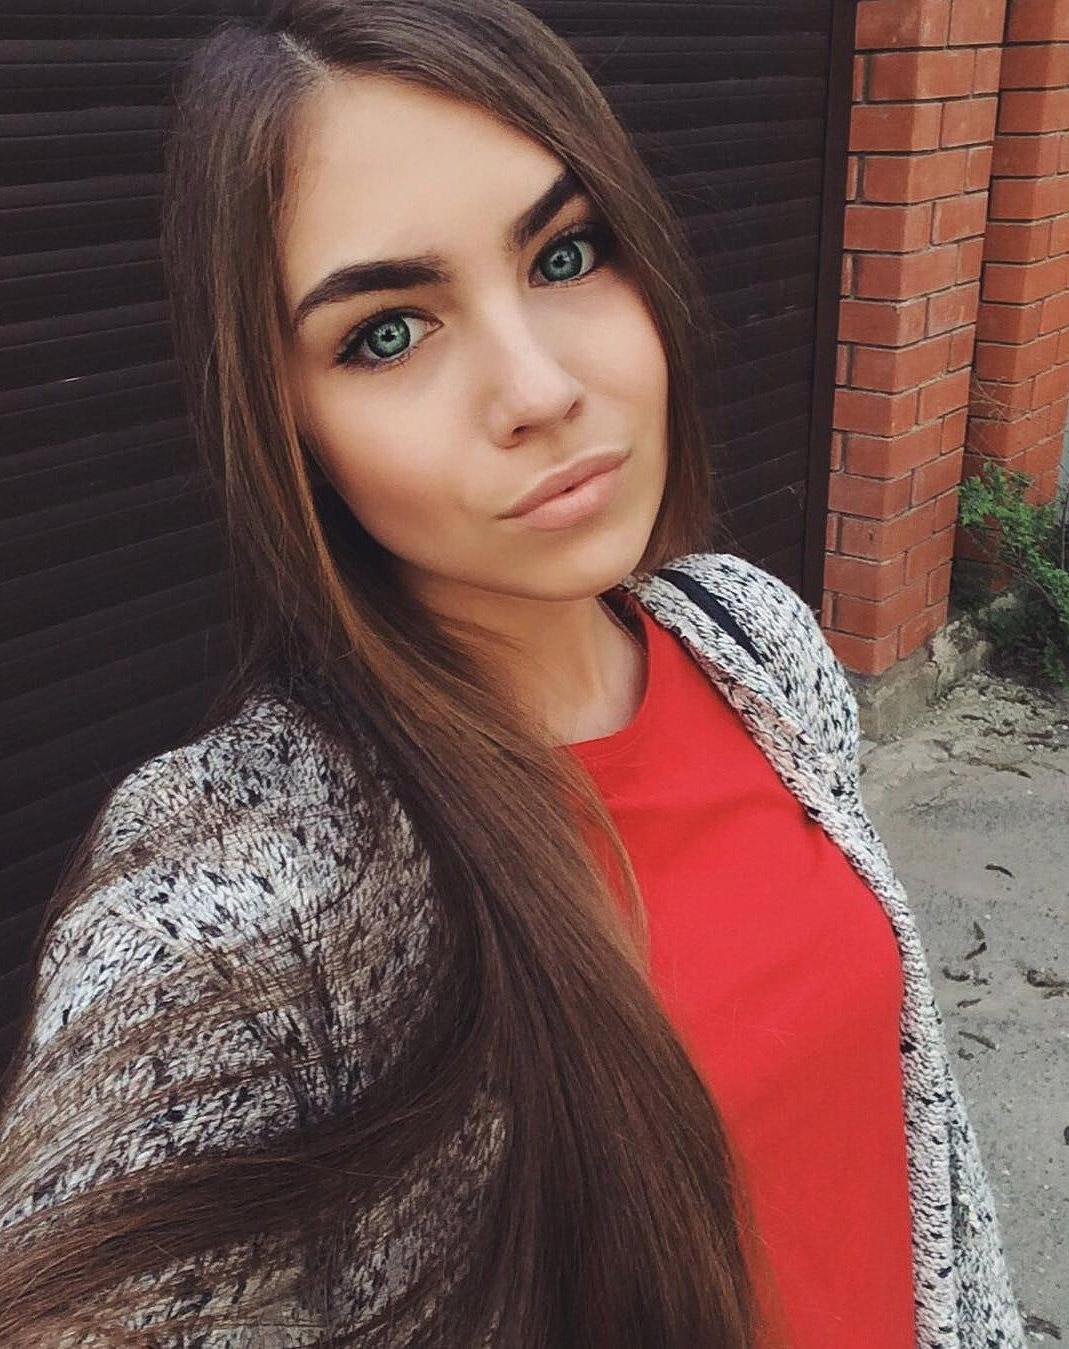 Сайте знакомства девушка 20 лет. Красивые русские девушки 20 лет. Обычные красивые девушки.